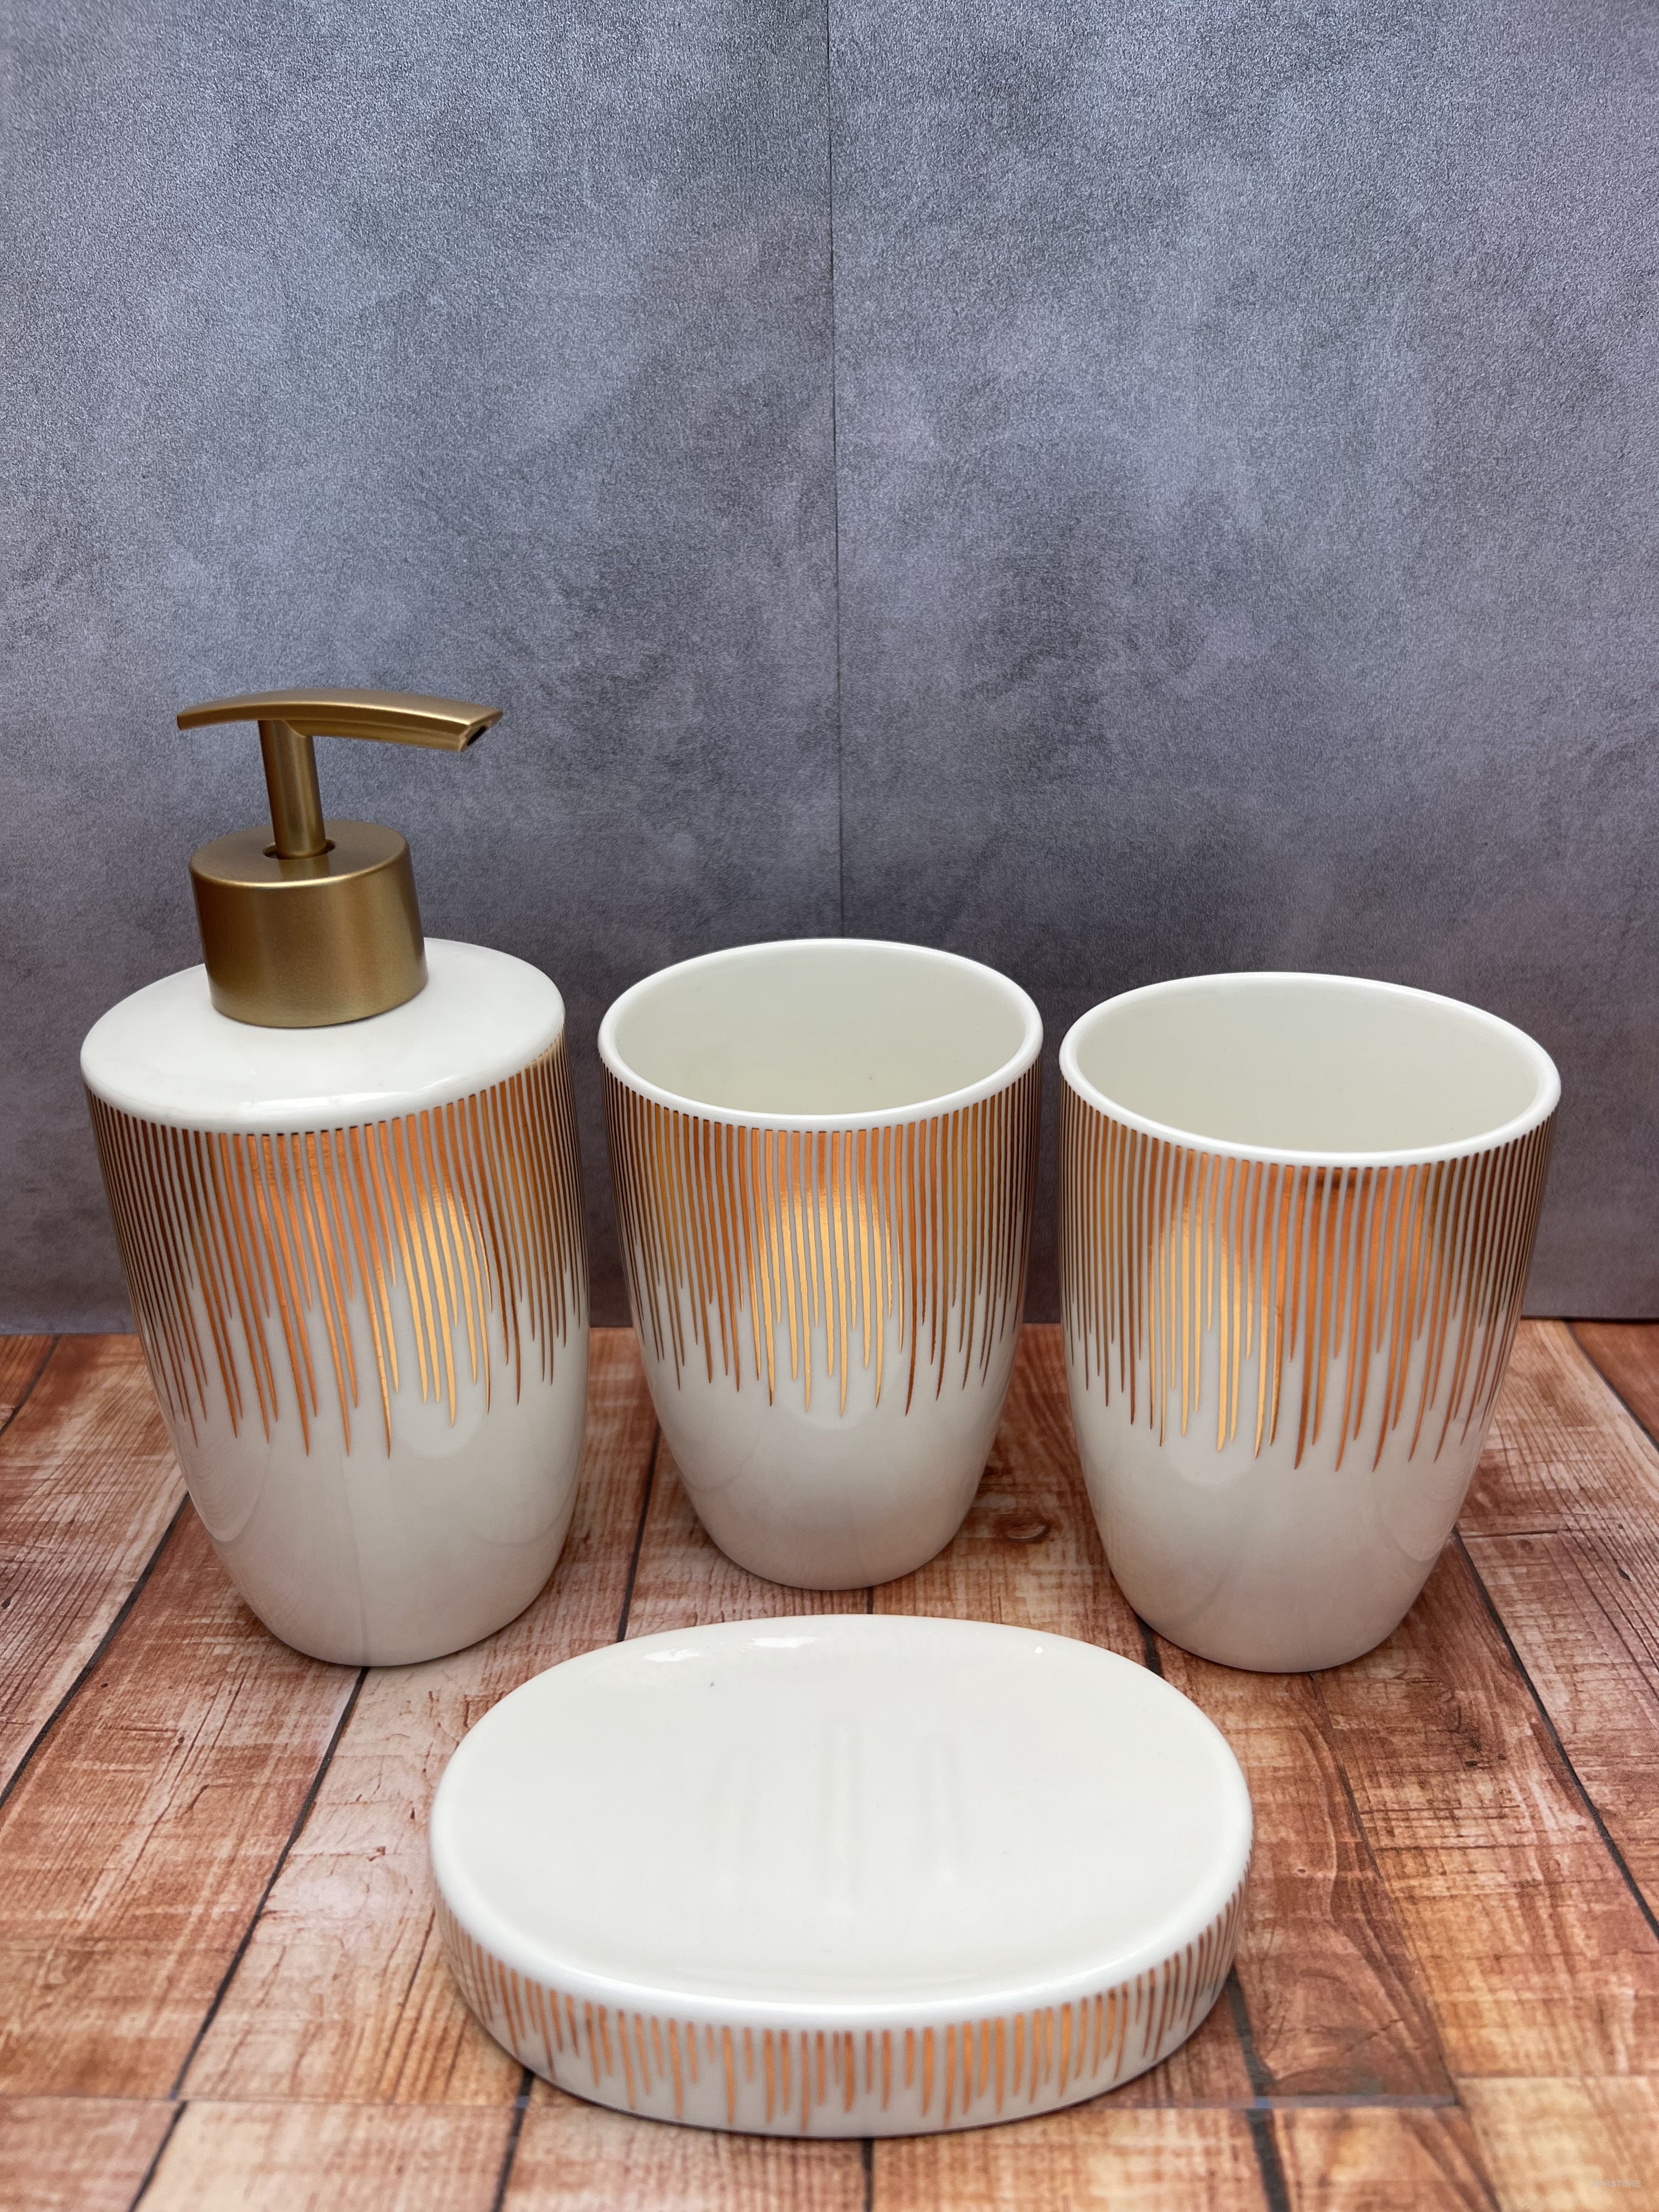  JIWEIMO Juego de 4 accesorios de baño de cerámica